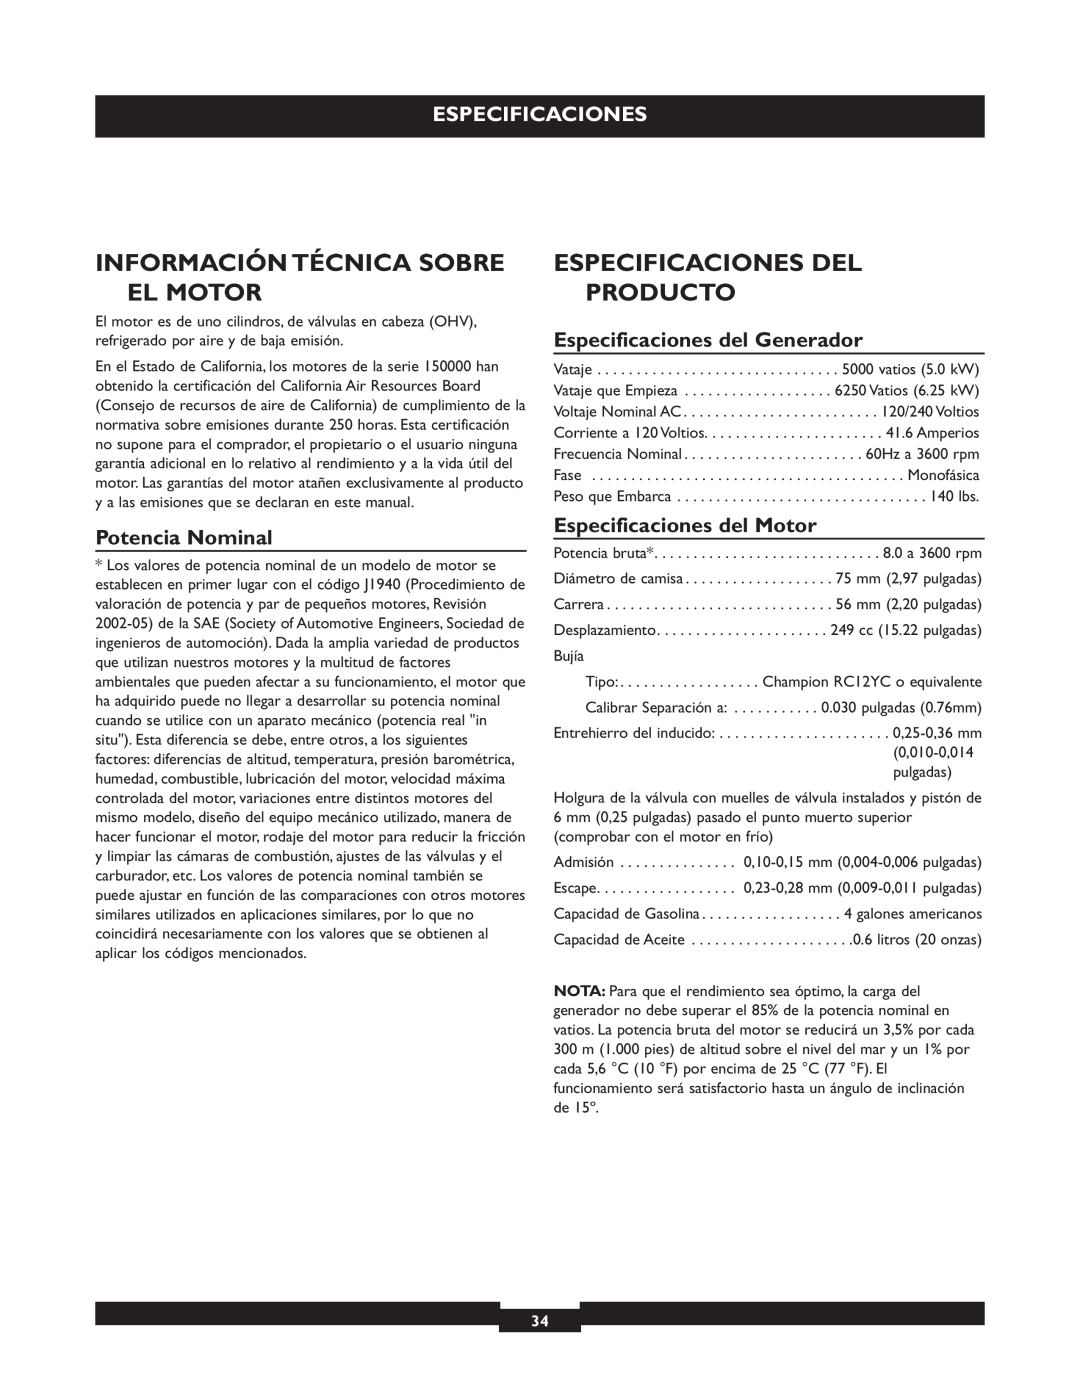 Briggs & Stratton 30219 Información Técnica Sobre El Motor, Especificaciones Del Producto, Especificaciones del Generador 